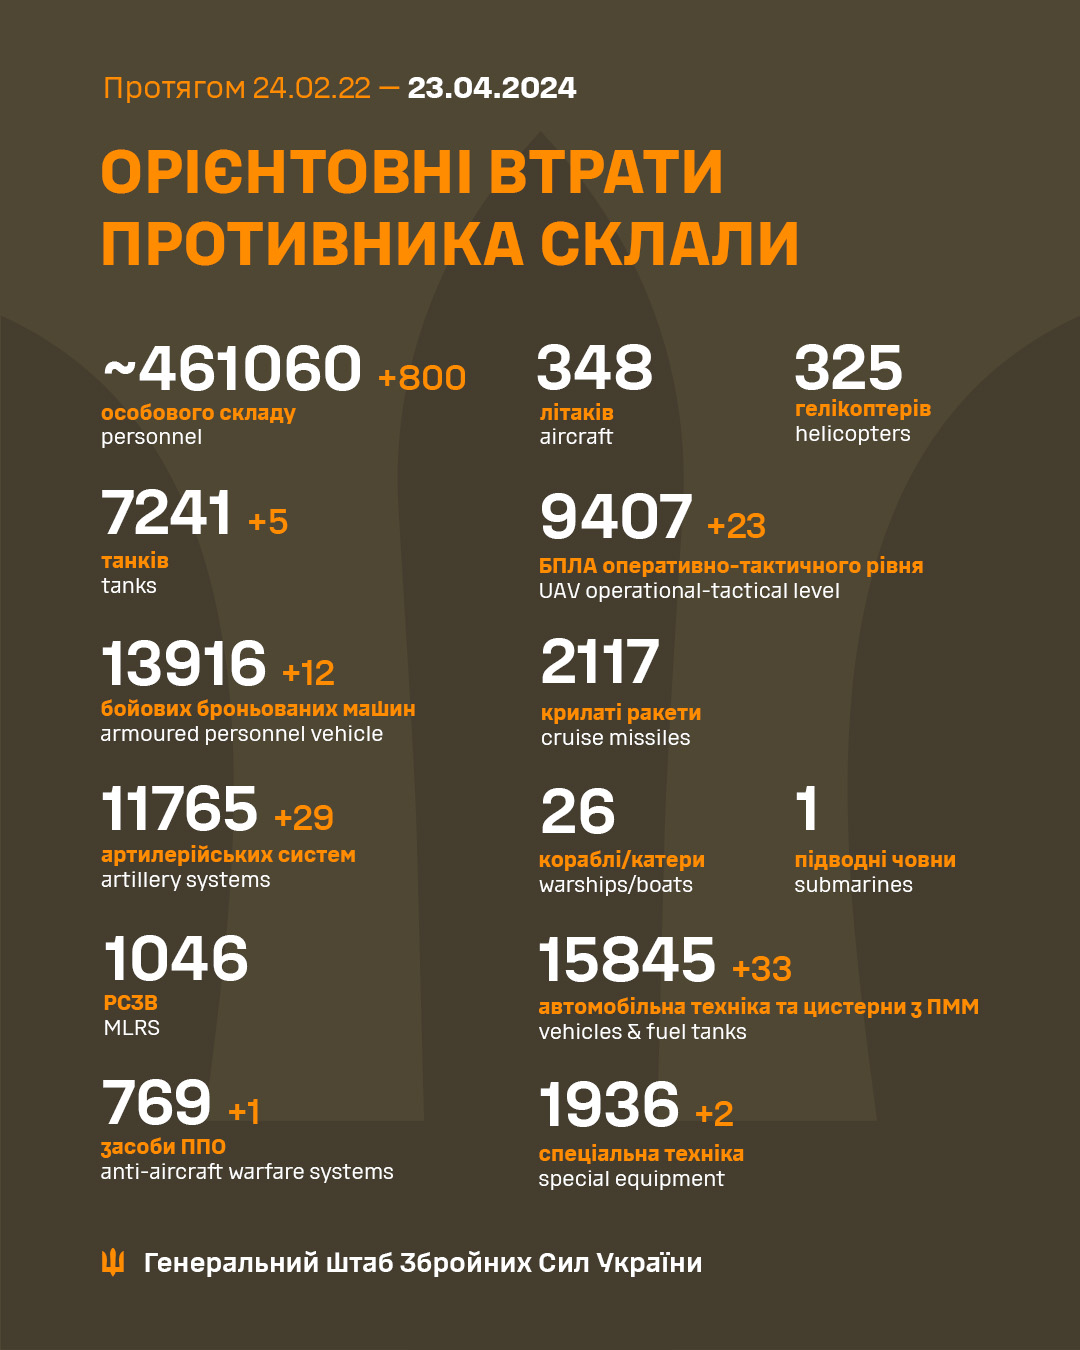 800 загарбників і 29 артсистем. Генштаб оновив втрати РФ в Україні